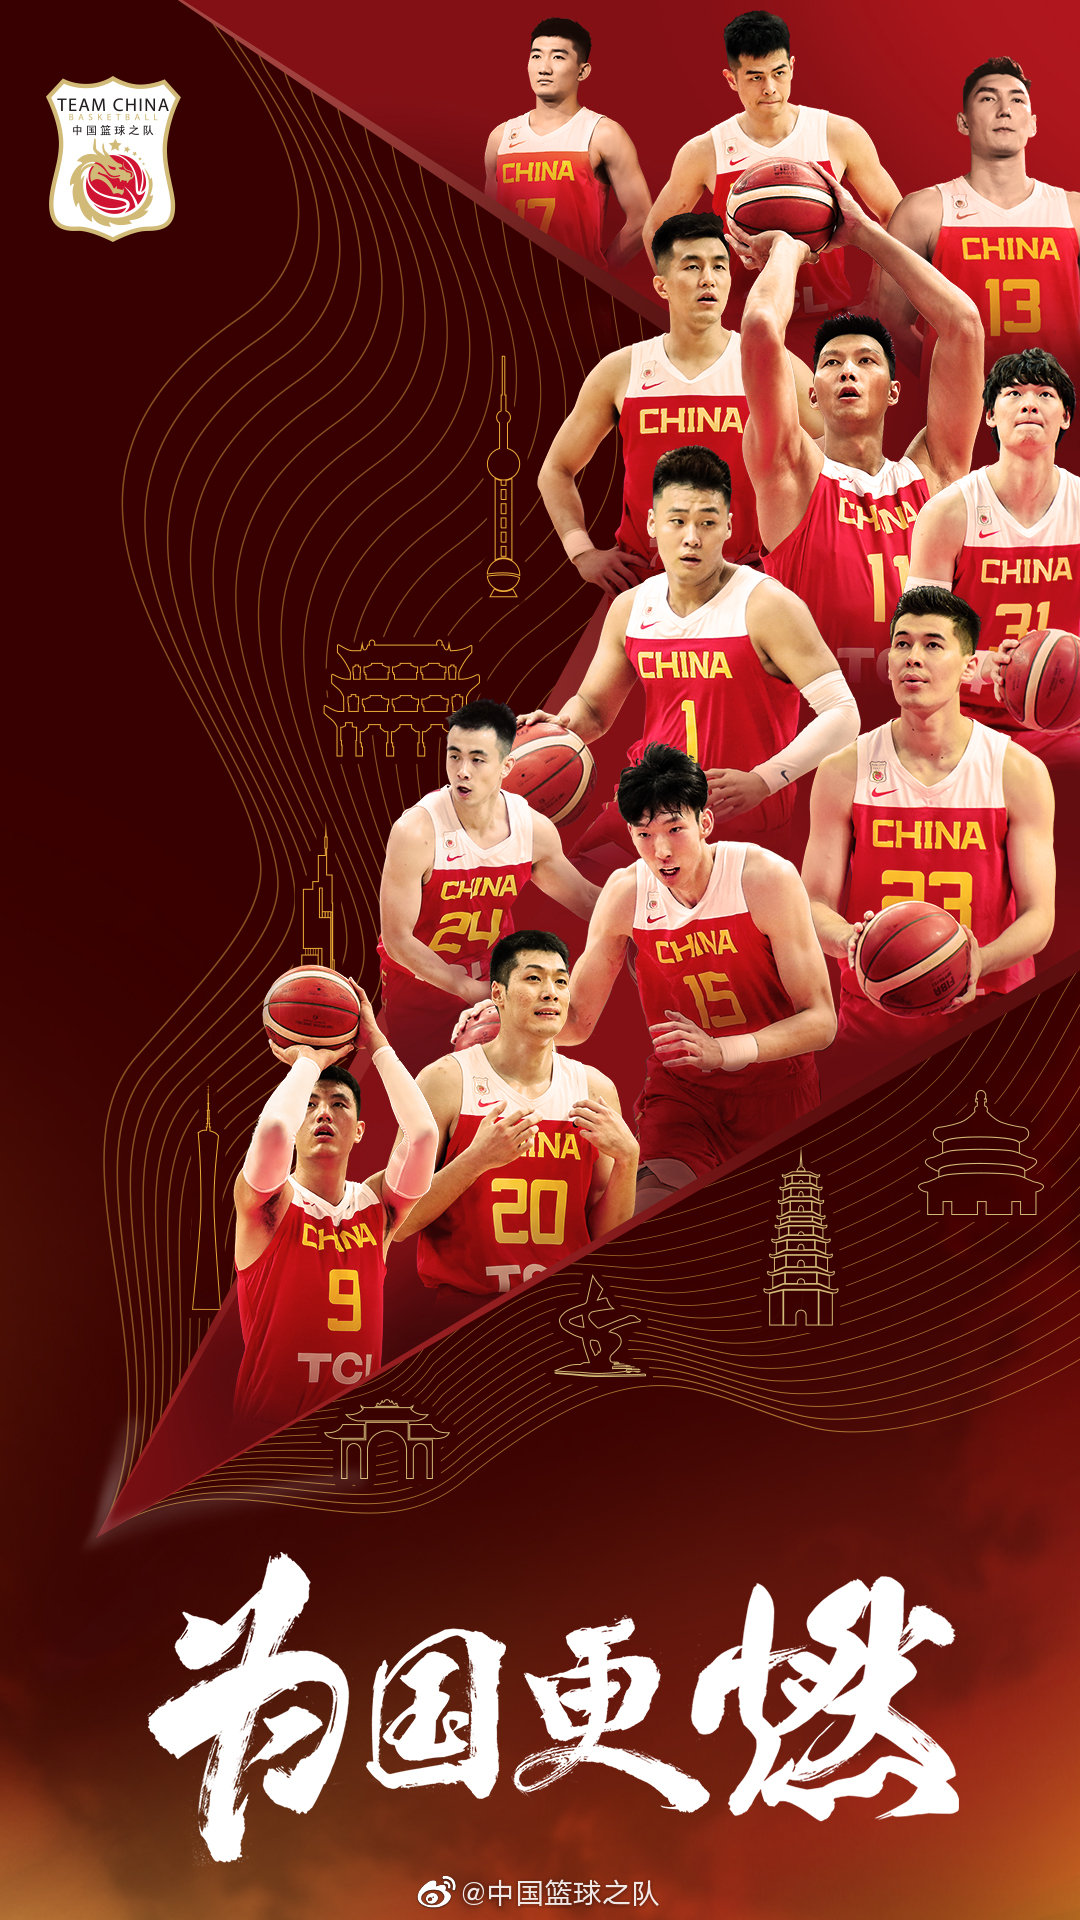 包含2022中国男篮世界杯预选赛的词条